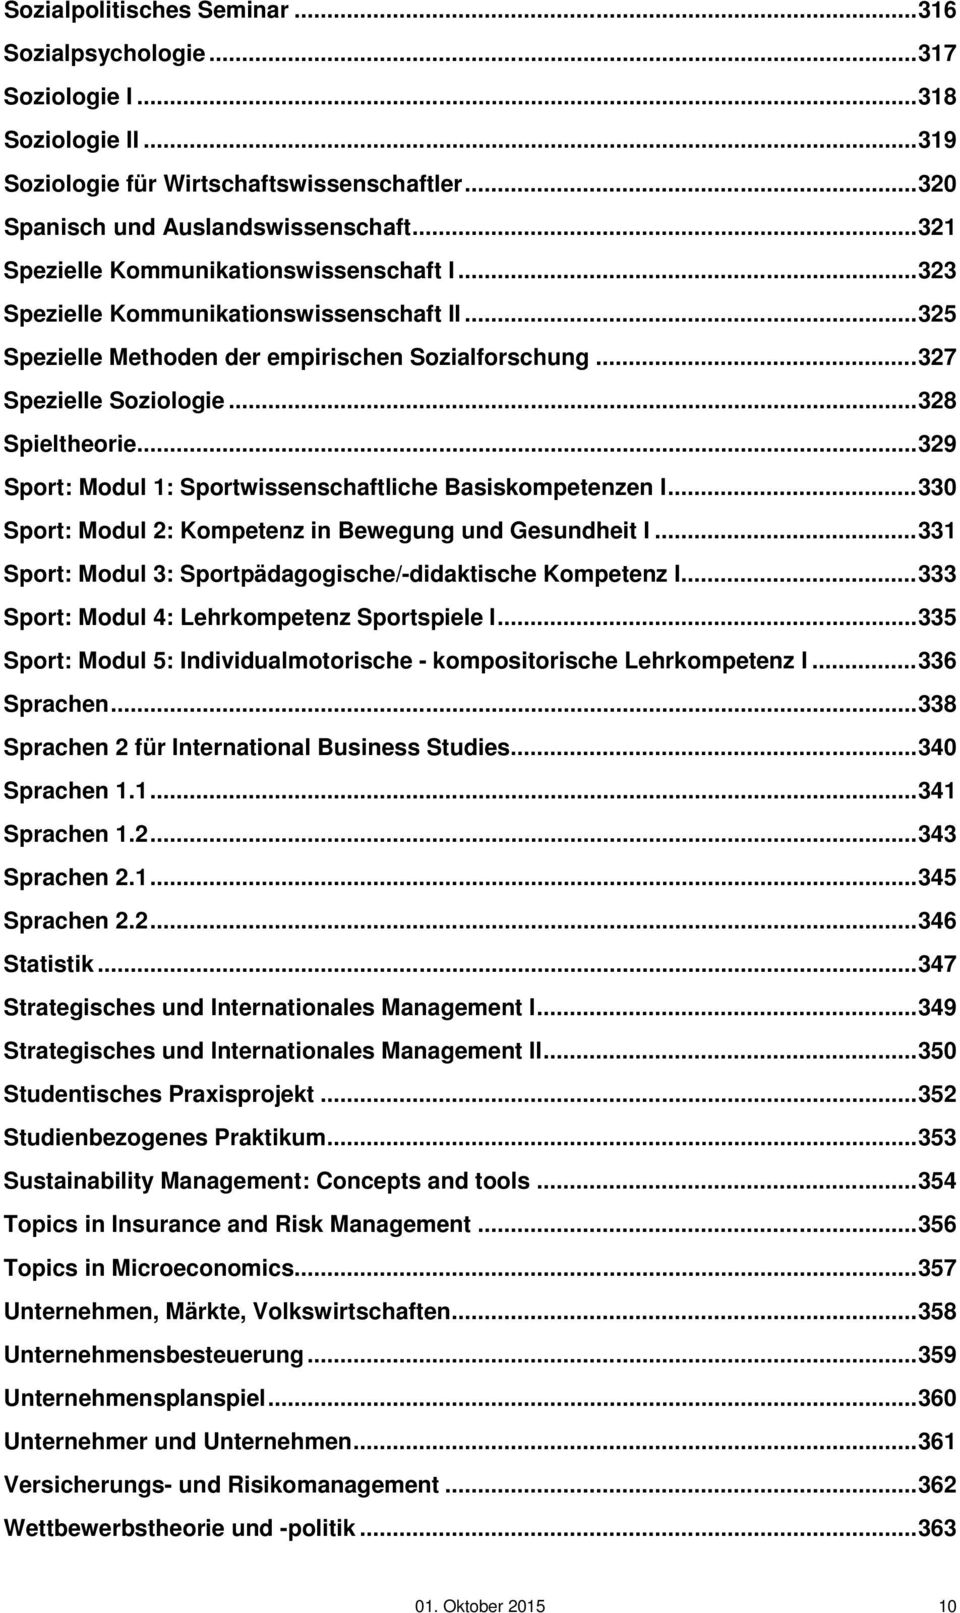 .. 329 Sport: Modul 1: Sportwissenschaftliche Basiskompetenzen I... 330 Sport: Modul 2: Kompetenz in Bewegung und Gesundheit I... 331 Sport: Modul 3: Sportpädagogische/-didaktische Kompetenz I.